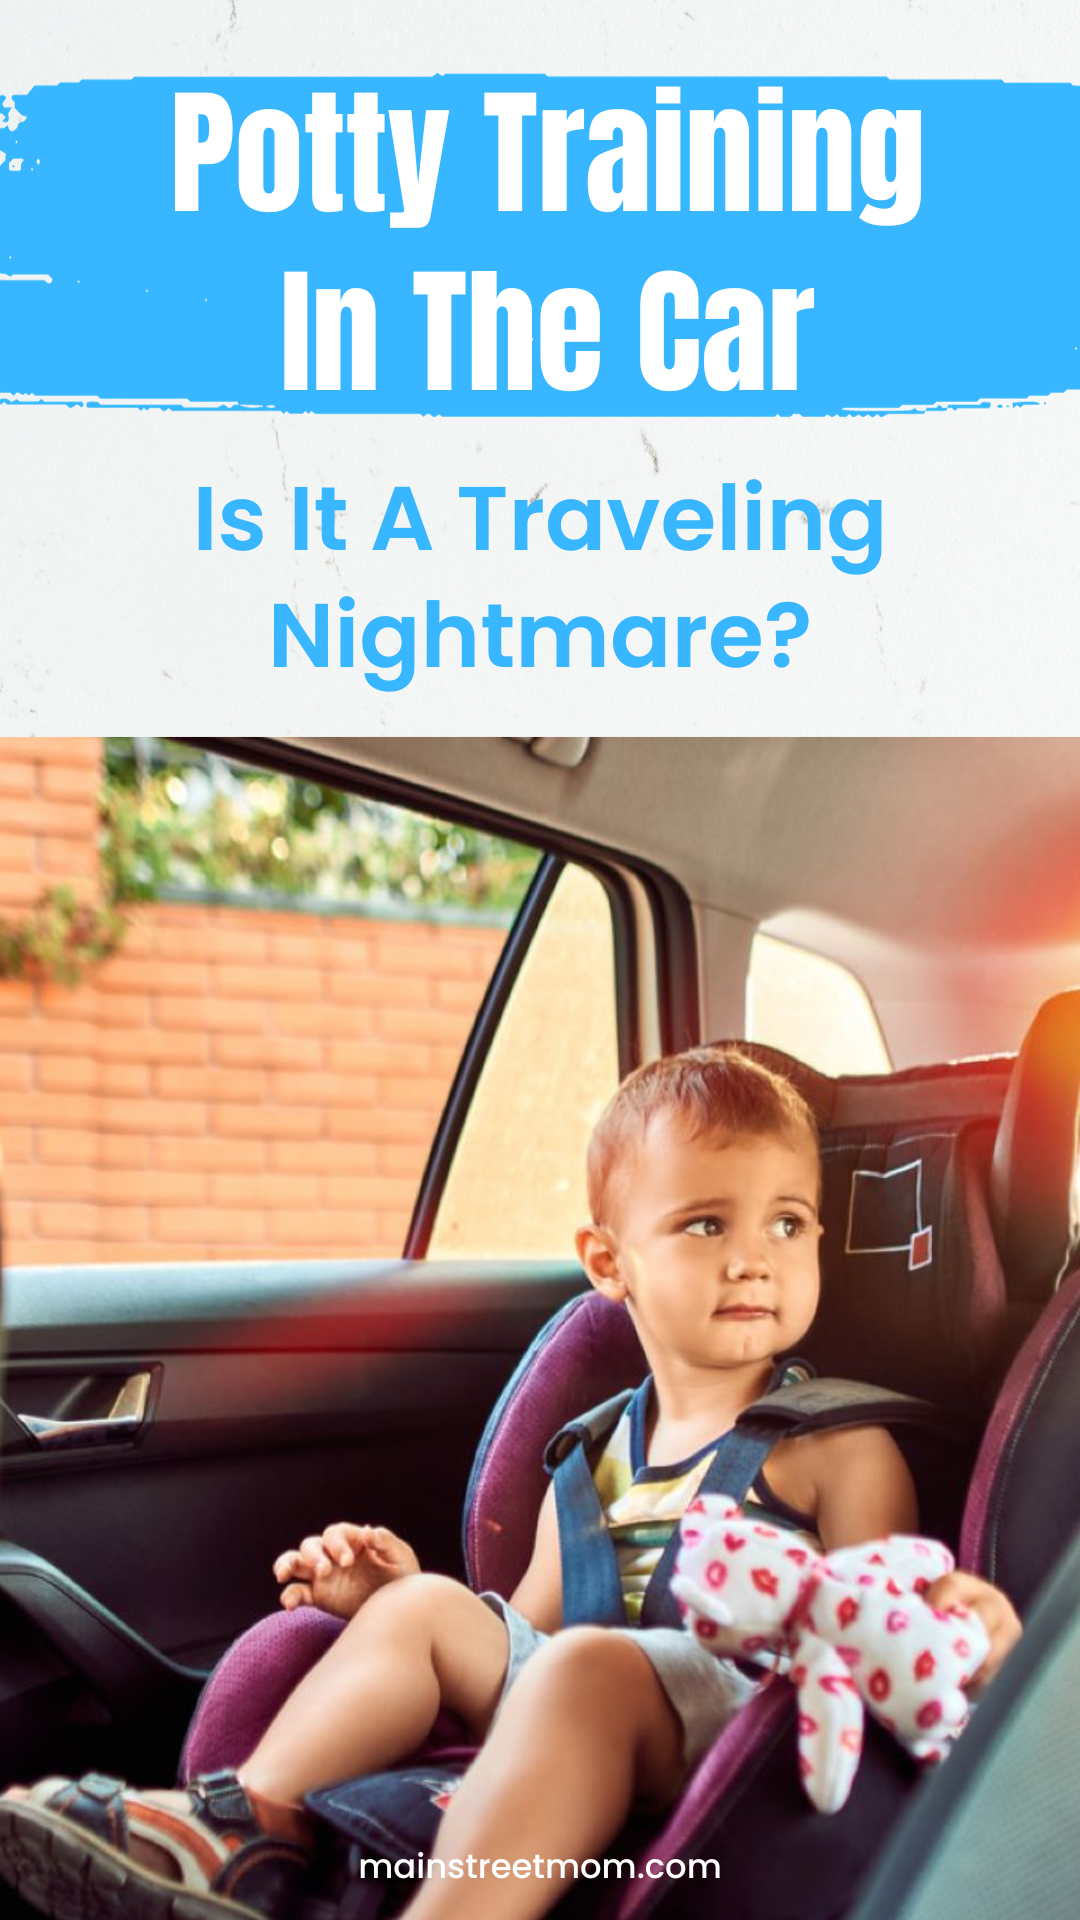 Töpfchentraining im Auto: Ist es ein Alptraum auf Reisen?